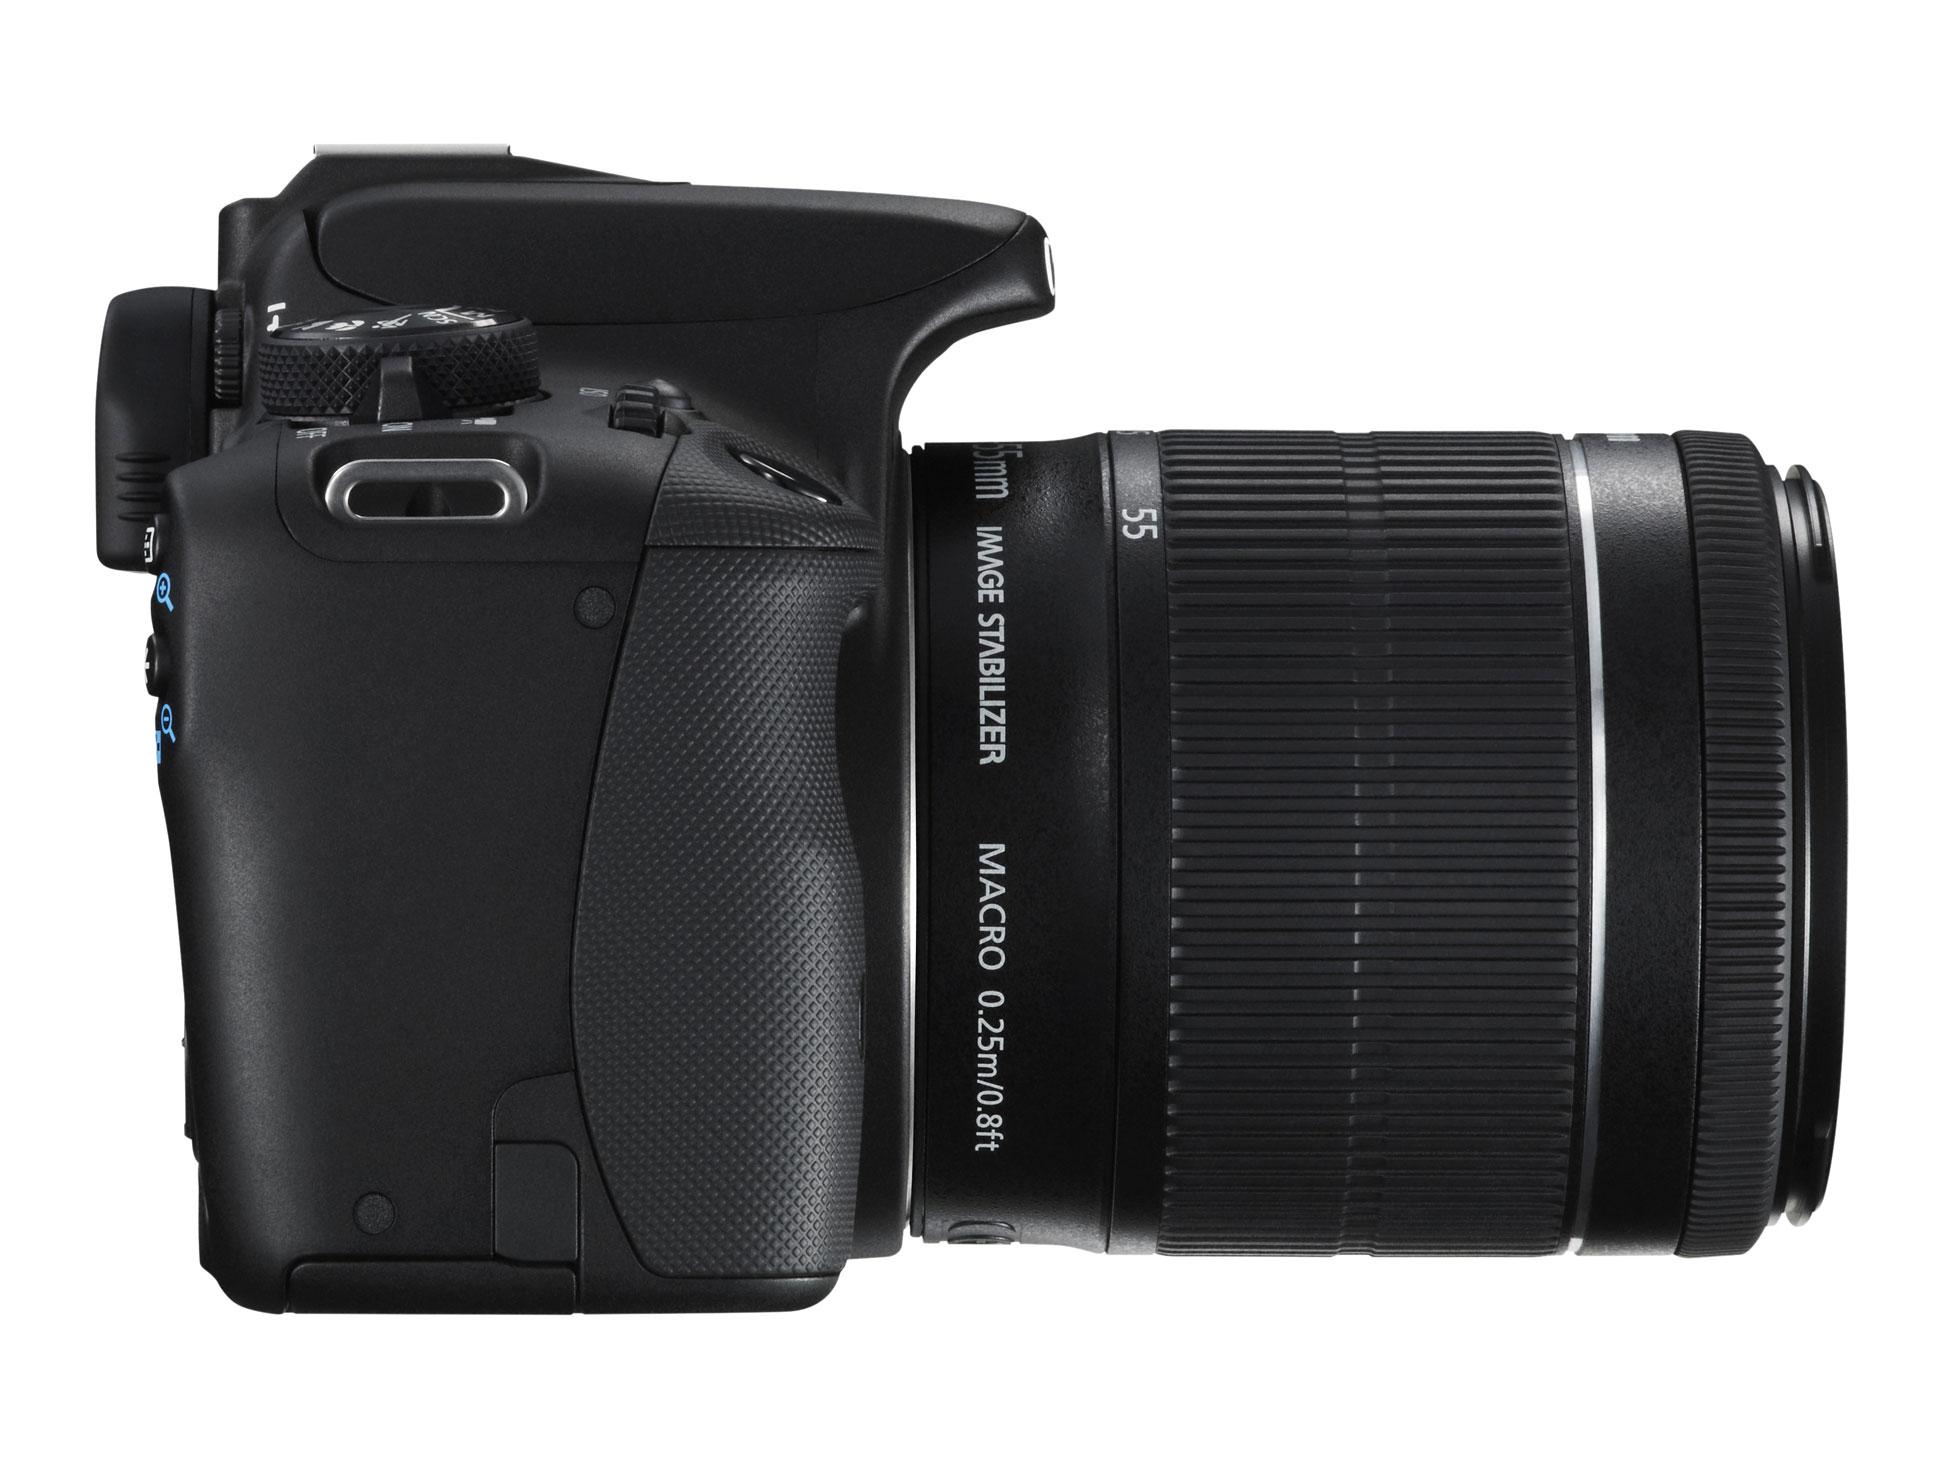 Canon EOS 100D er ikke store saken, men har Canon rett i at det er det minste?Foto: Canon